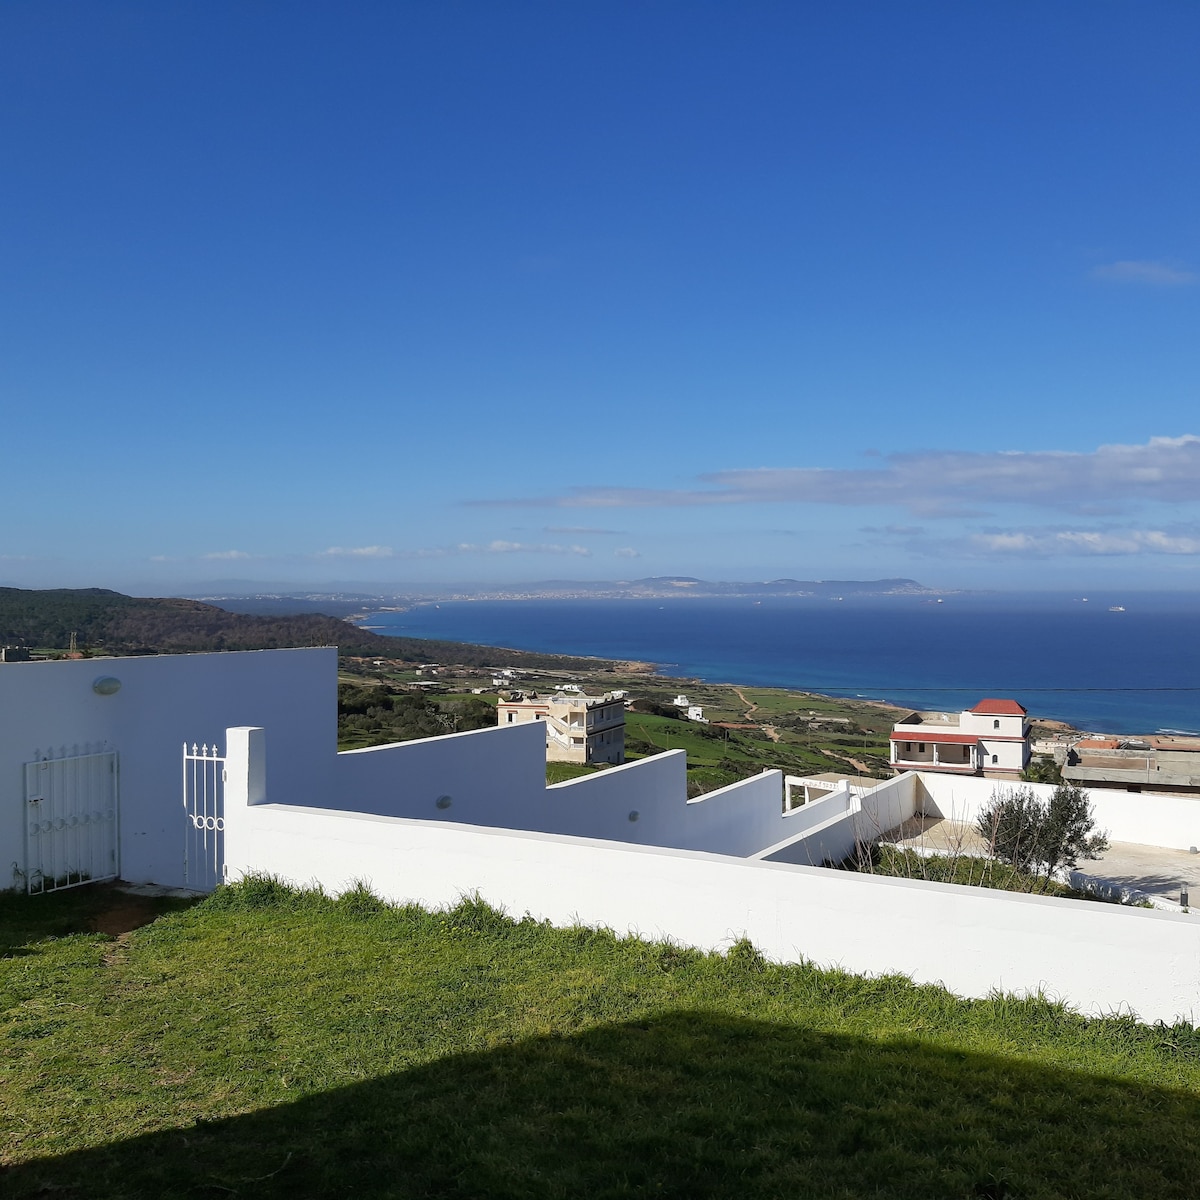 El Alia Vacation Rentals & Homes - Bizerte Governorate, Tunisia | Airbnb